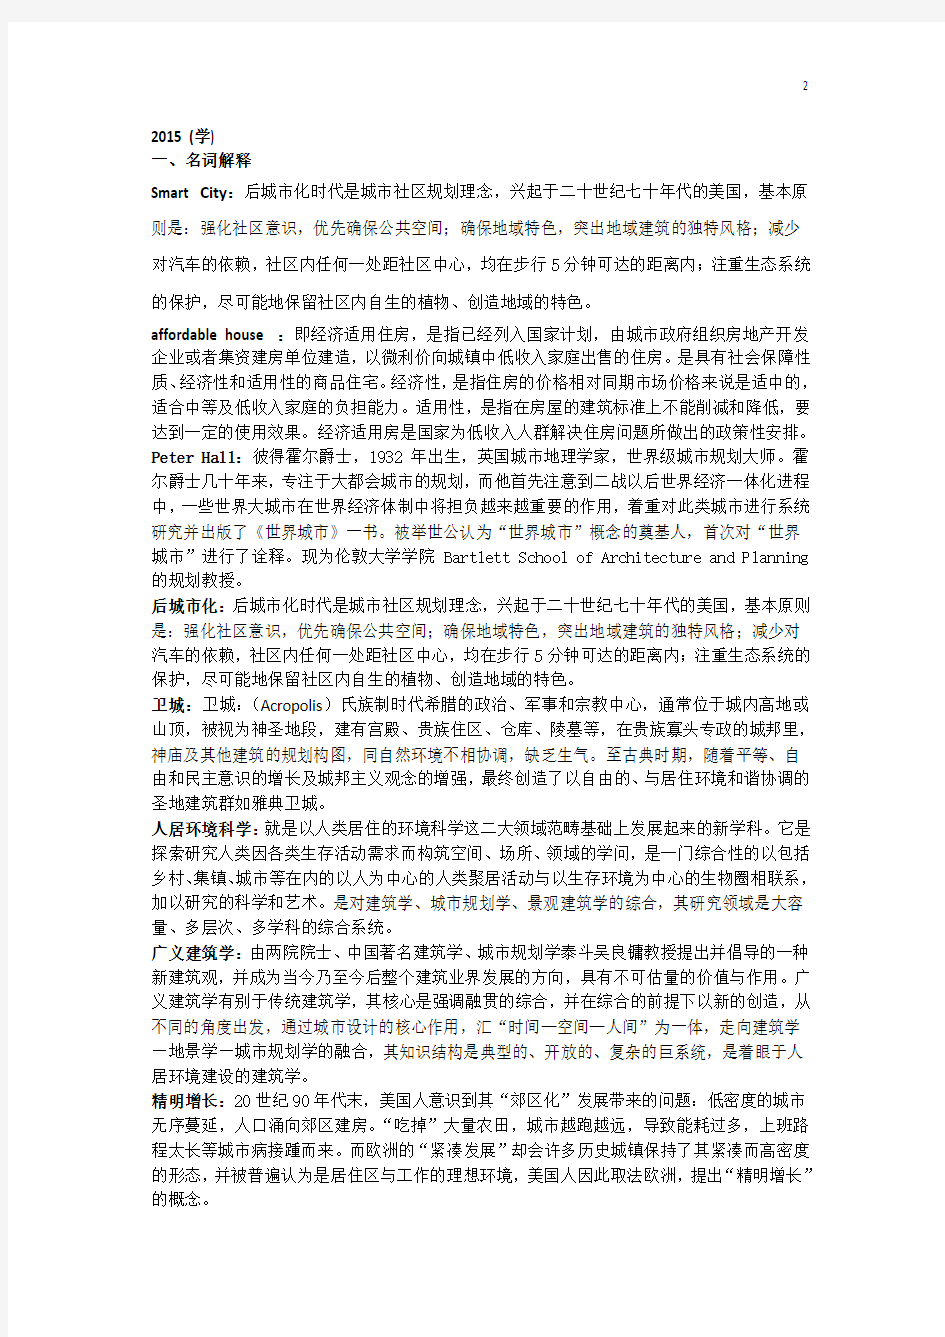 1993-2016重庆大学城乡规学考研真题总结及答案